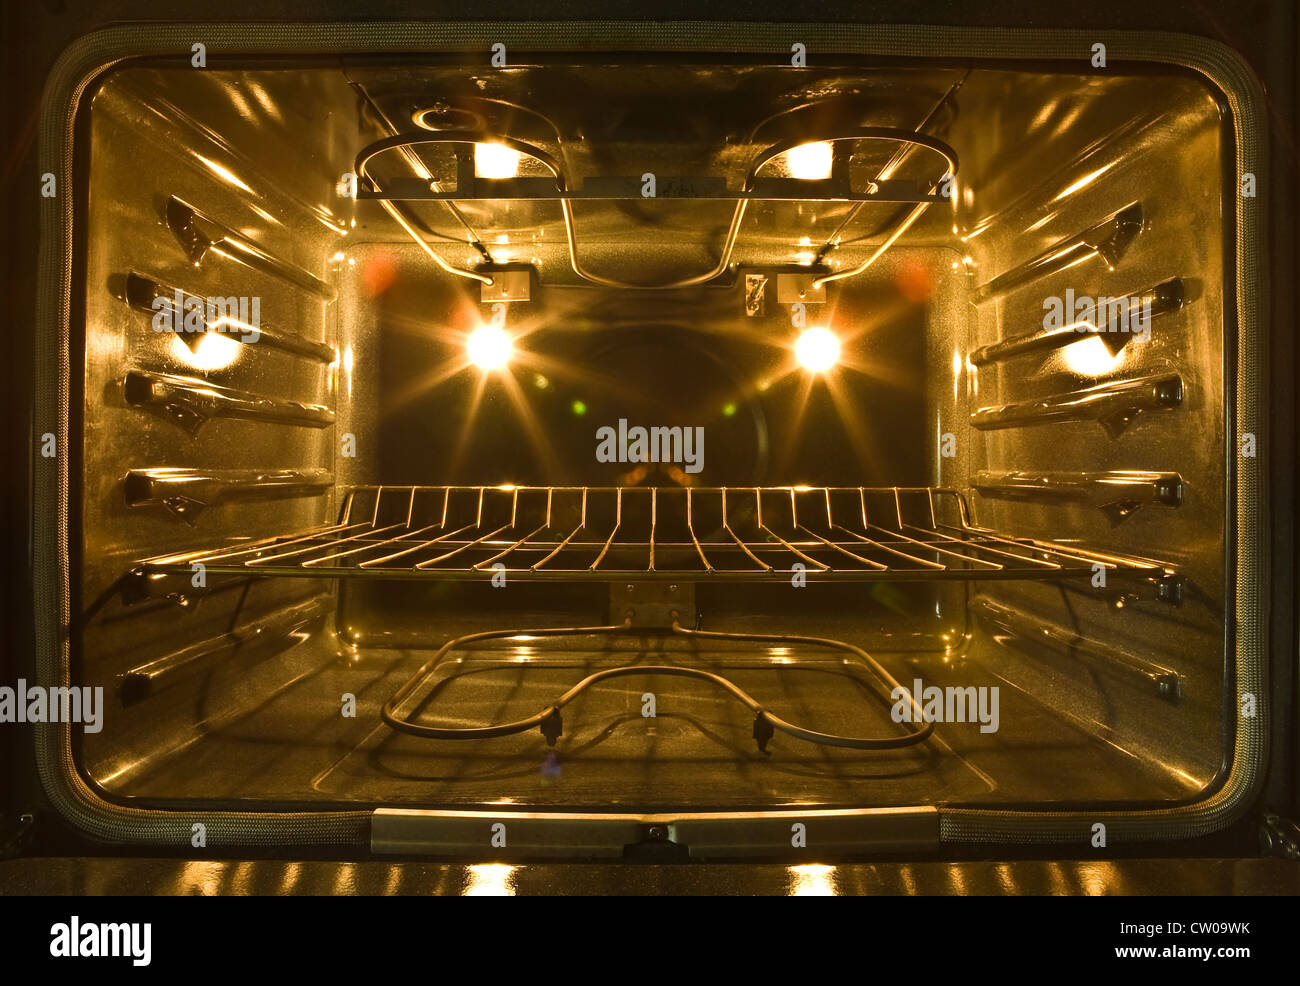 All'interno di una convezione forno elettrico che mostra le bobine di riscaldamento, forno luci, e ripiano di cottura. Foto Stock